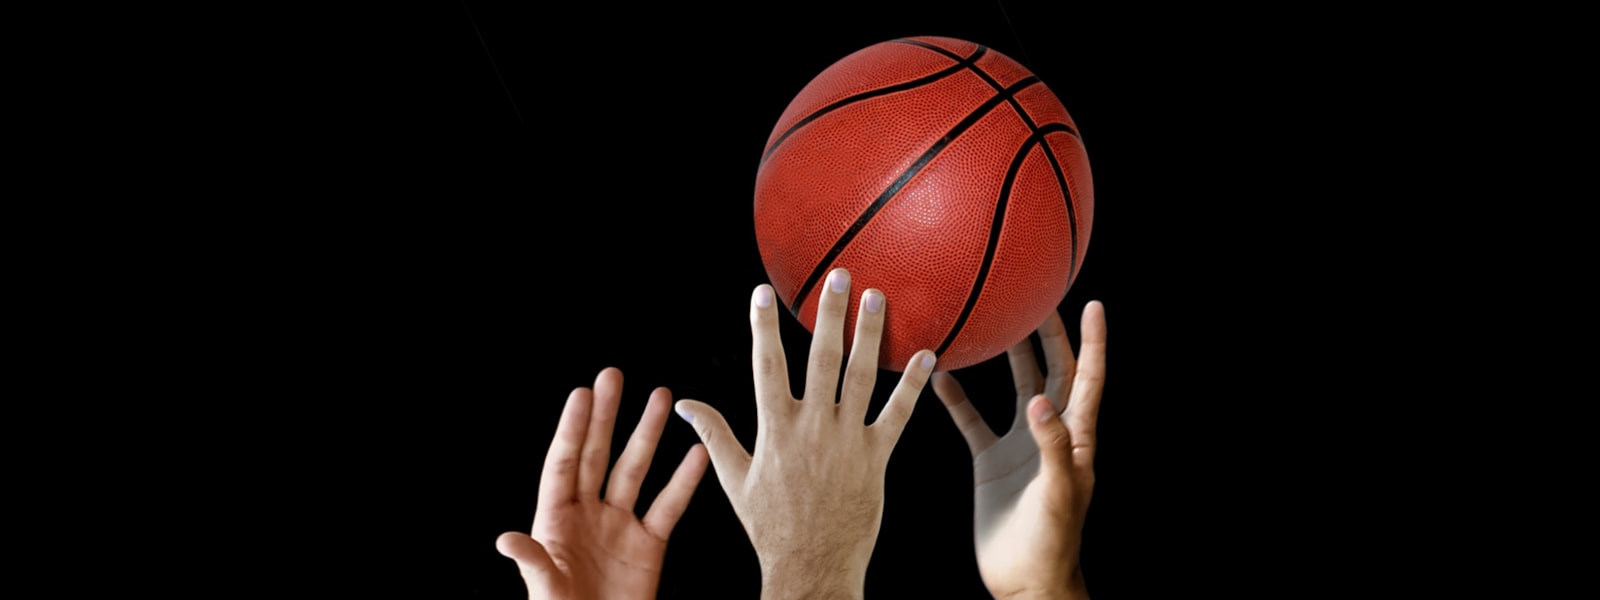 hands grabbing a basketball